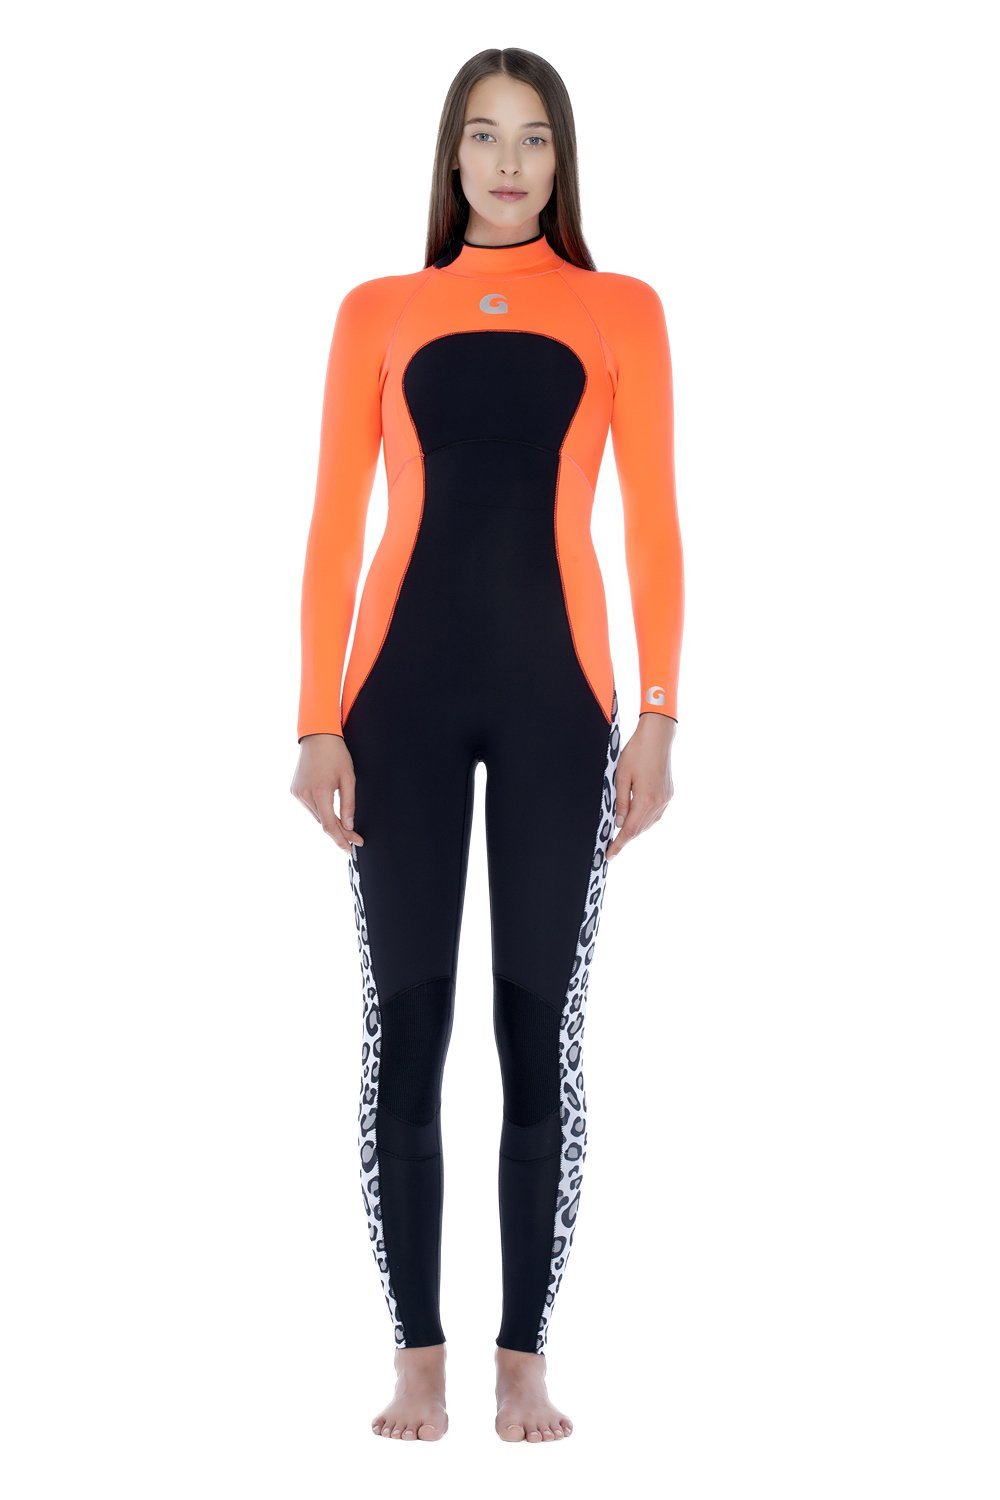 GlideSoul full wetsuit 3/2 MM women bold leopard /orange